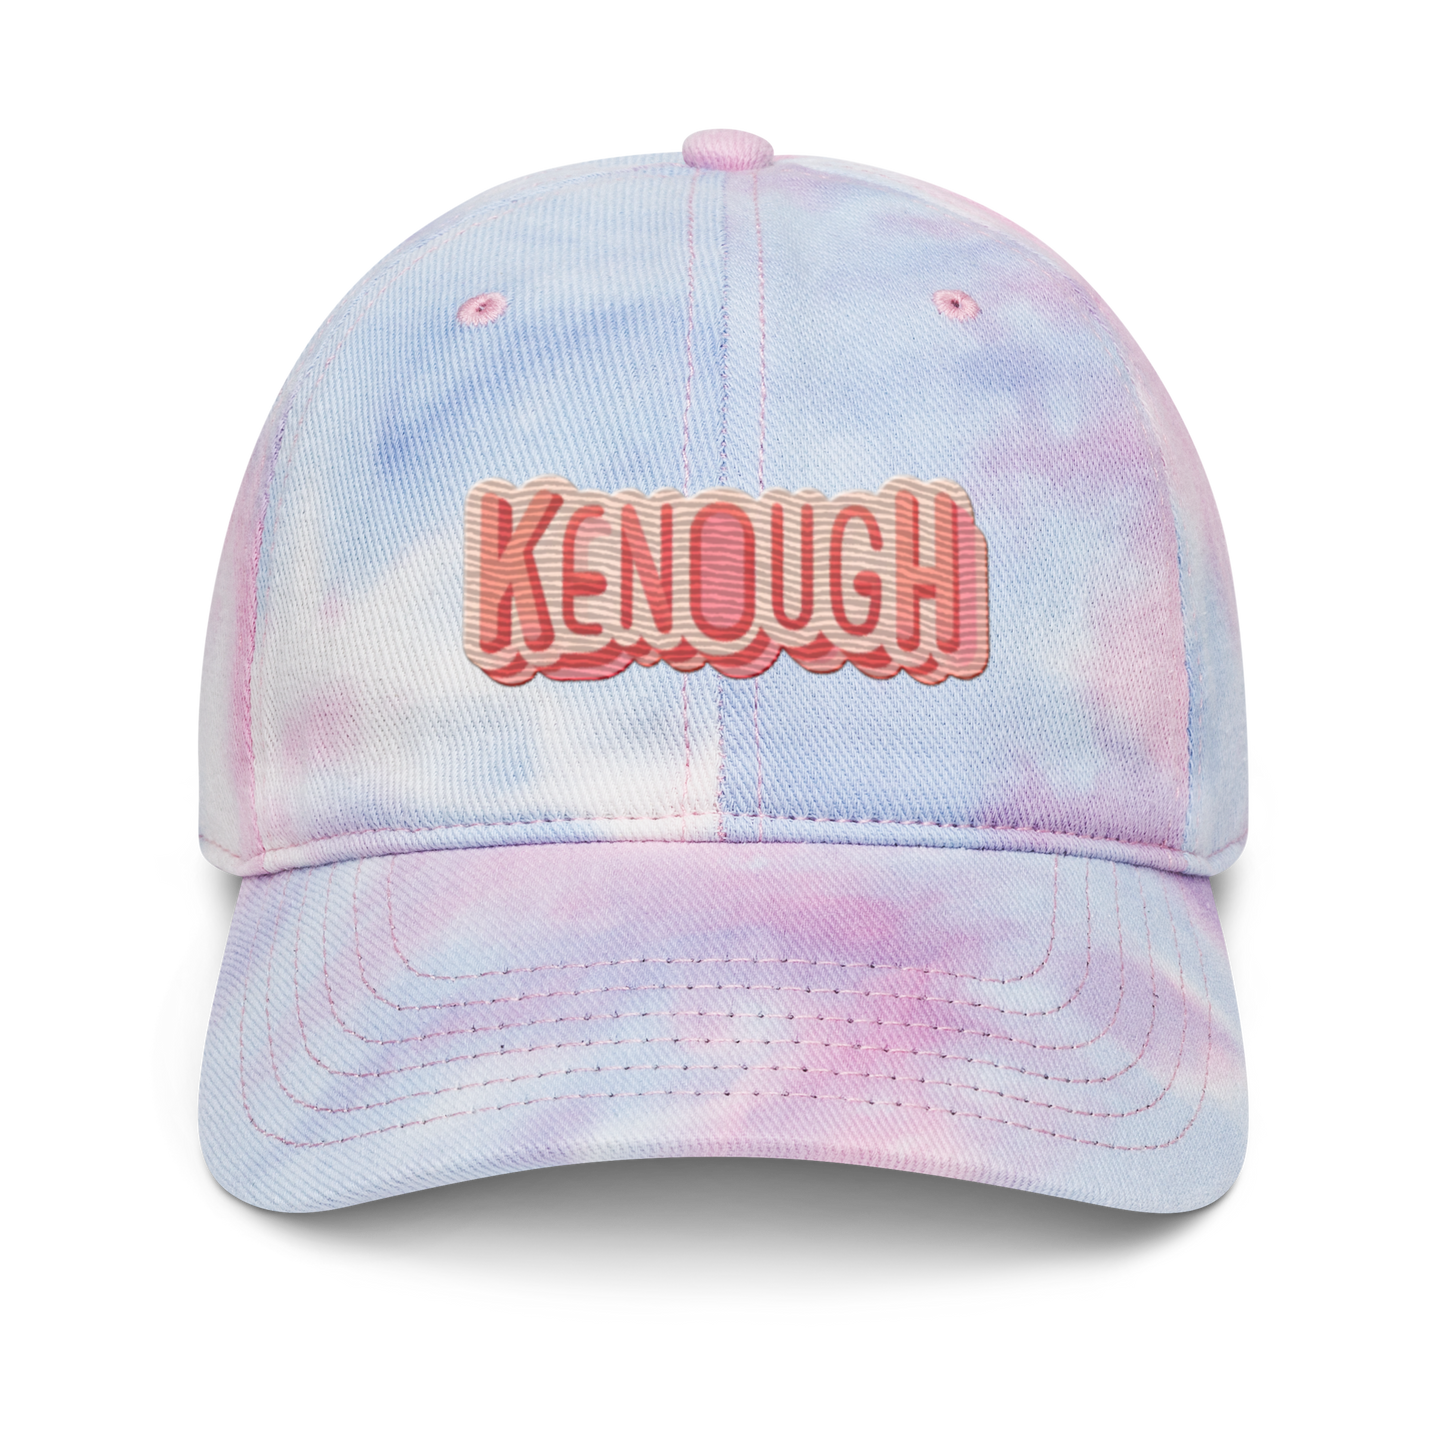 Kenough - Tie dye hat